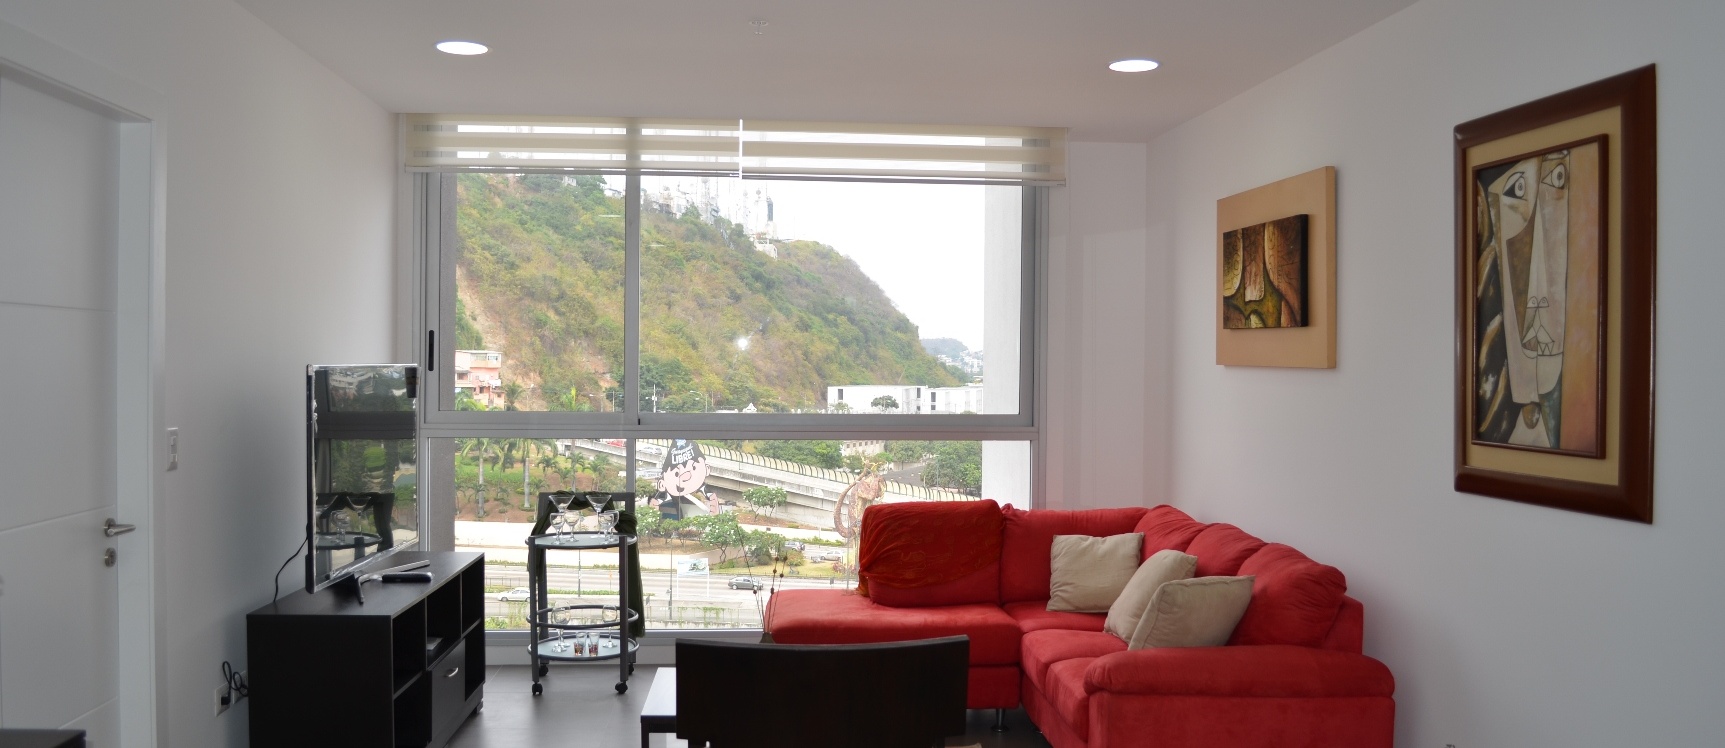 GeoBienes - Departamento en alquiler  en edificio Spazio sector Puerto Santa Ana - Plusvalia Guayaquil Casas de venta y alquiler Inmobiliaria Ecuador